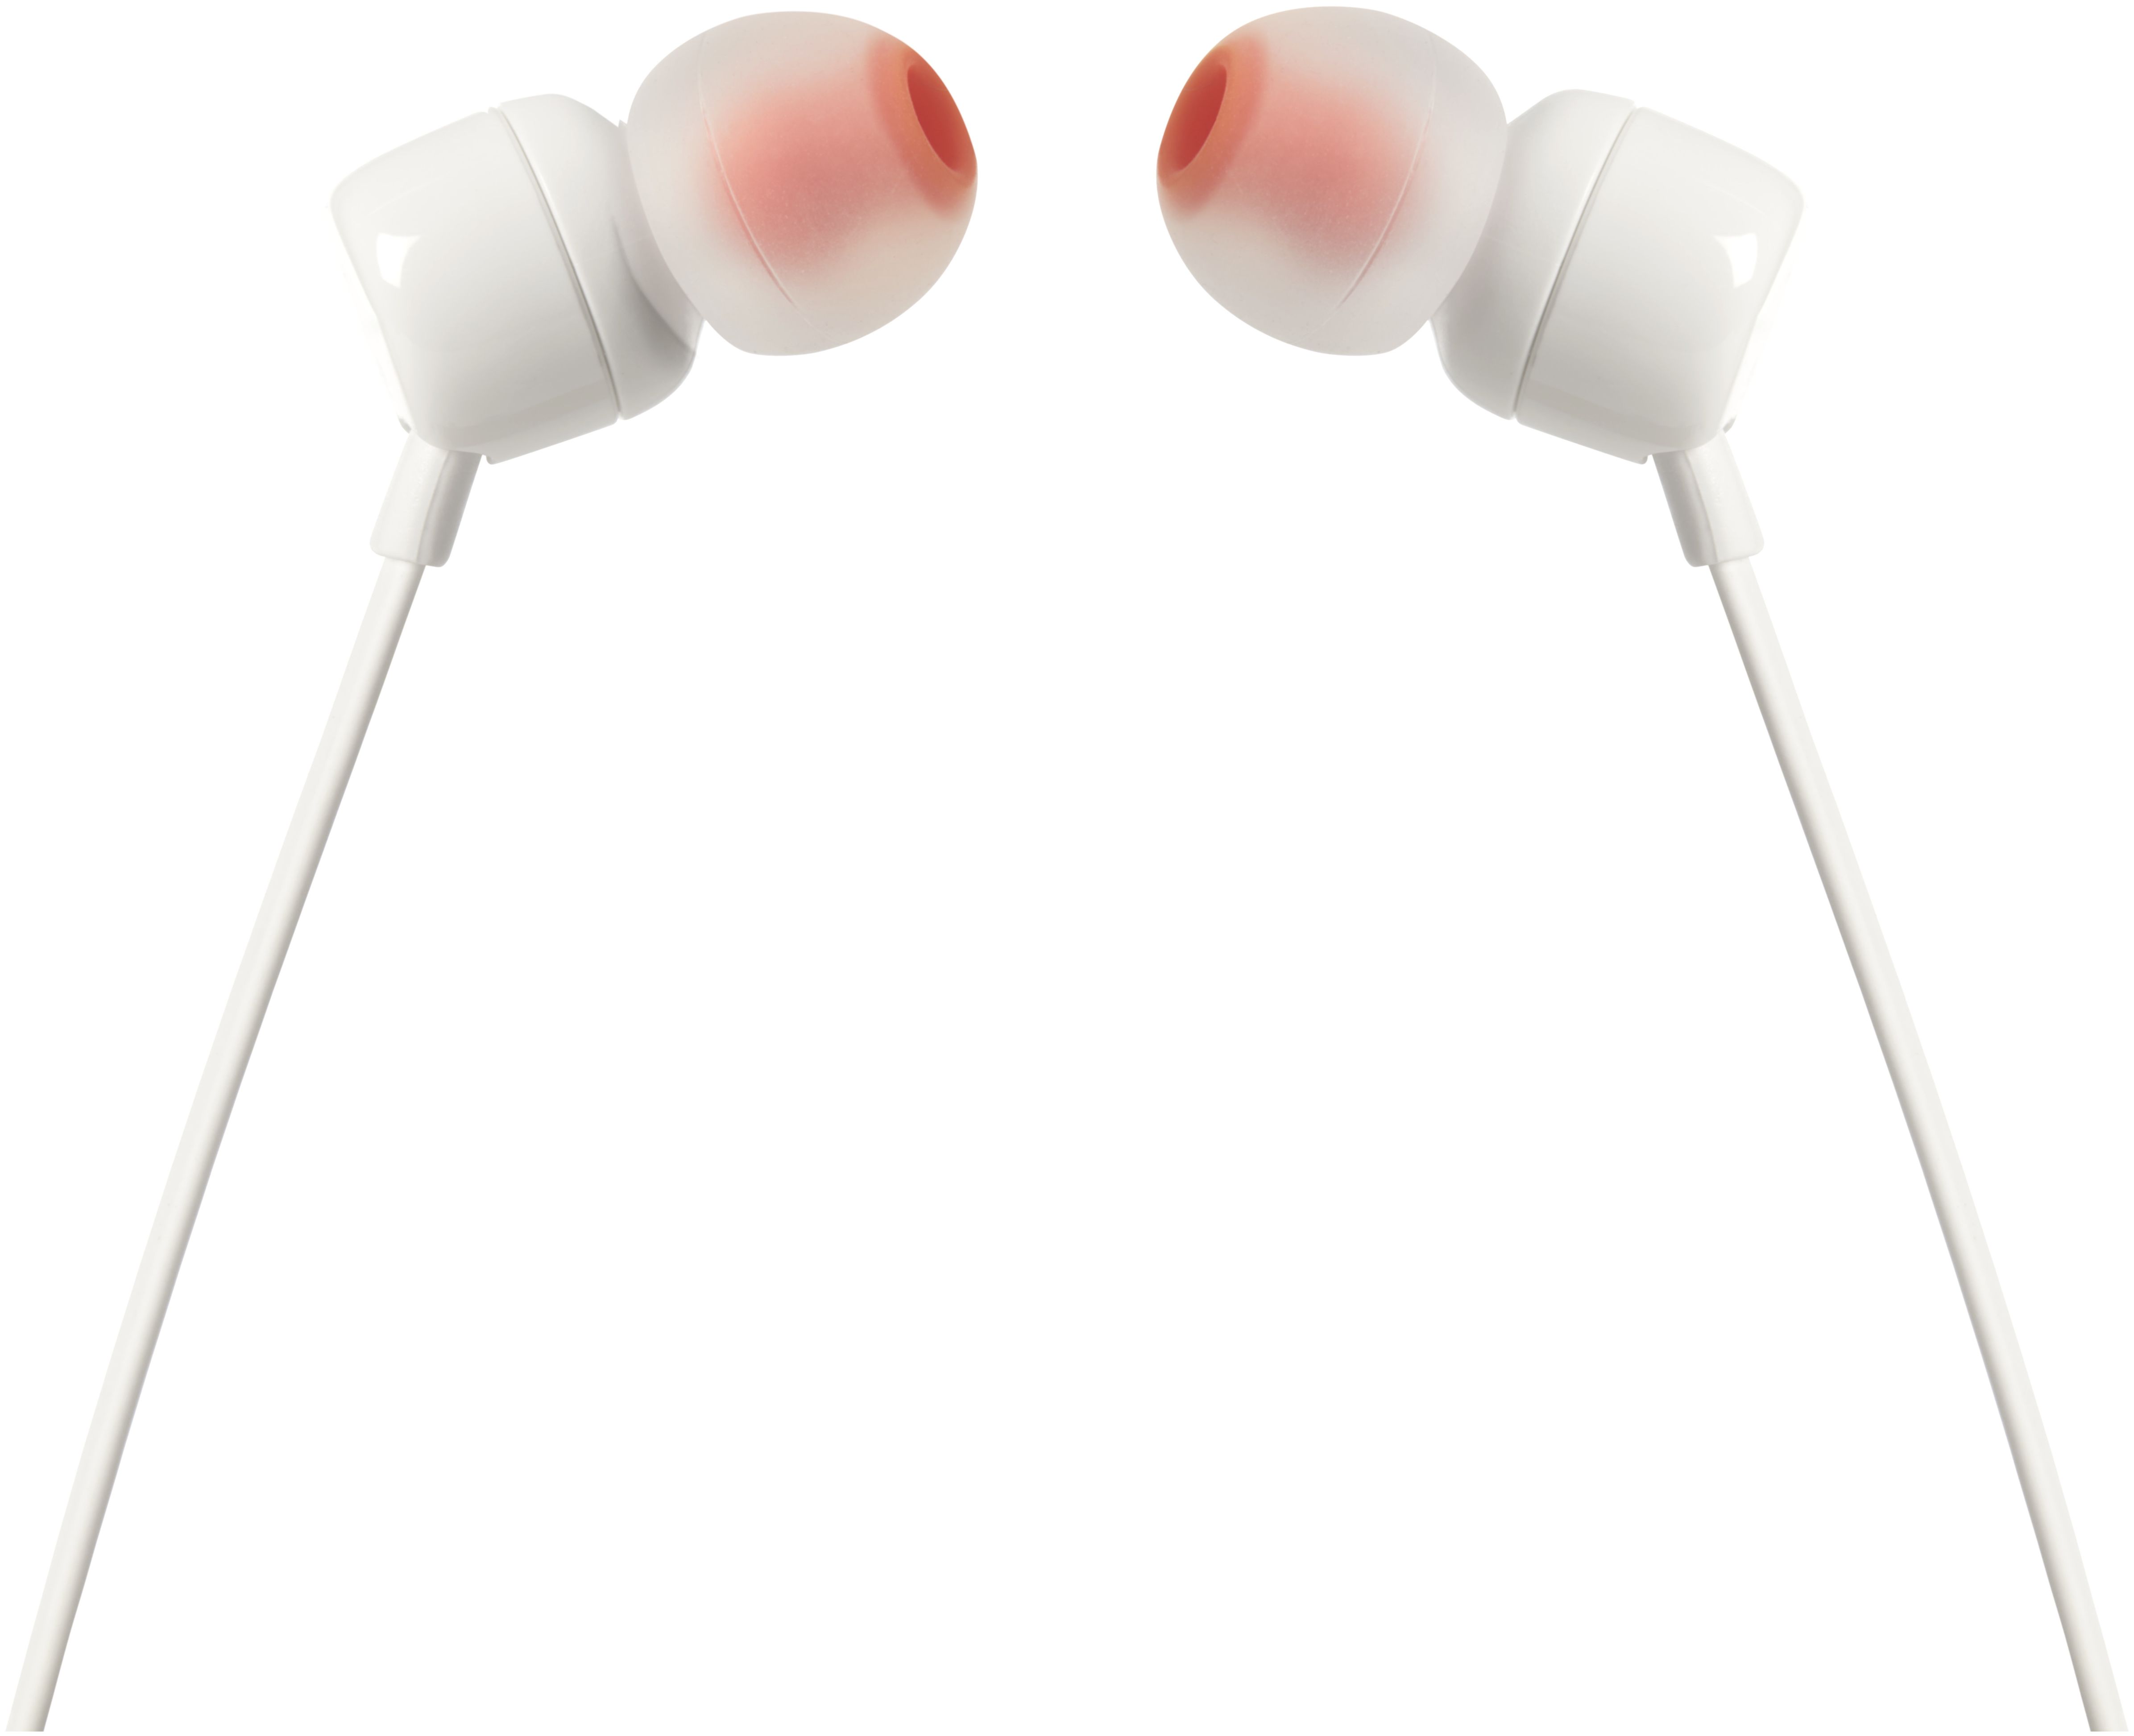 Technomarkt JBL 110 von Kabelgebunden expert Tune Kopfhörer In-Ear (Weiß)